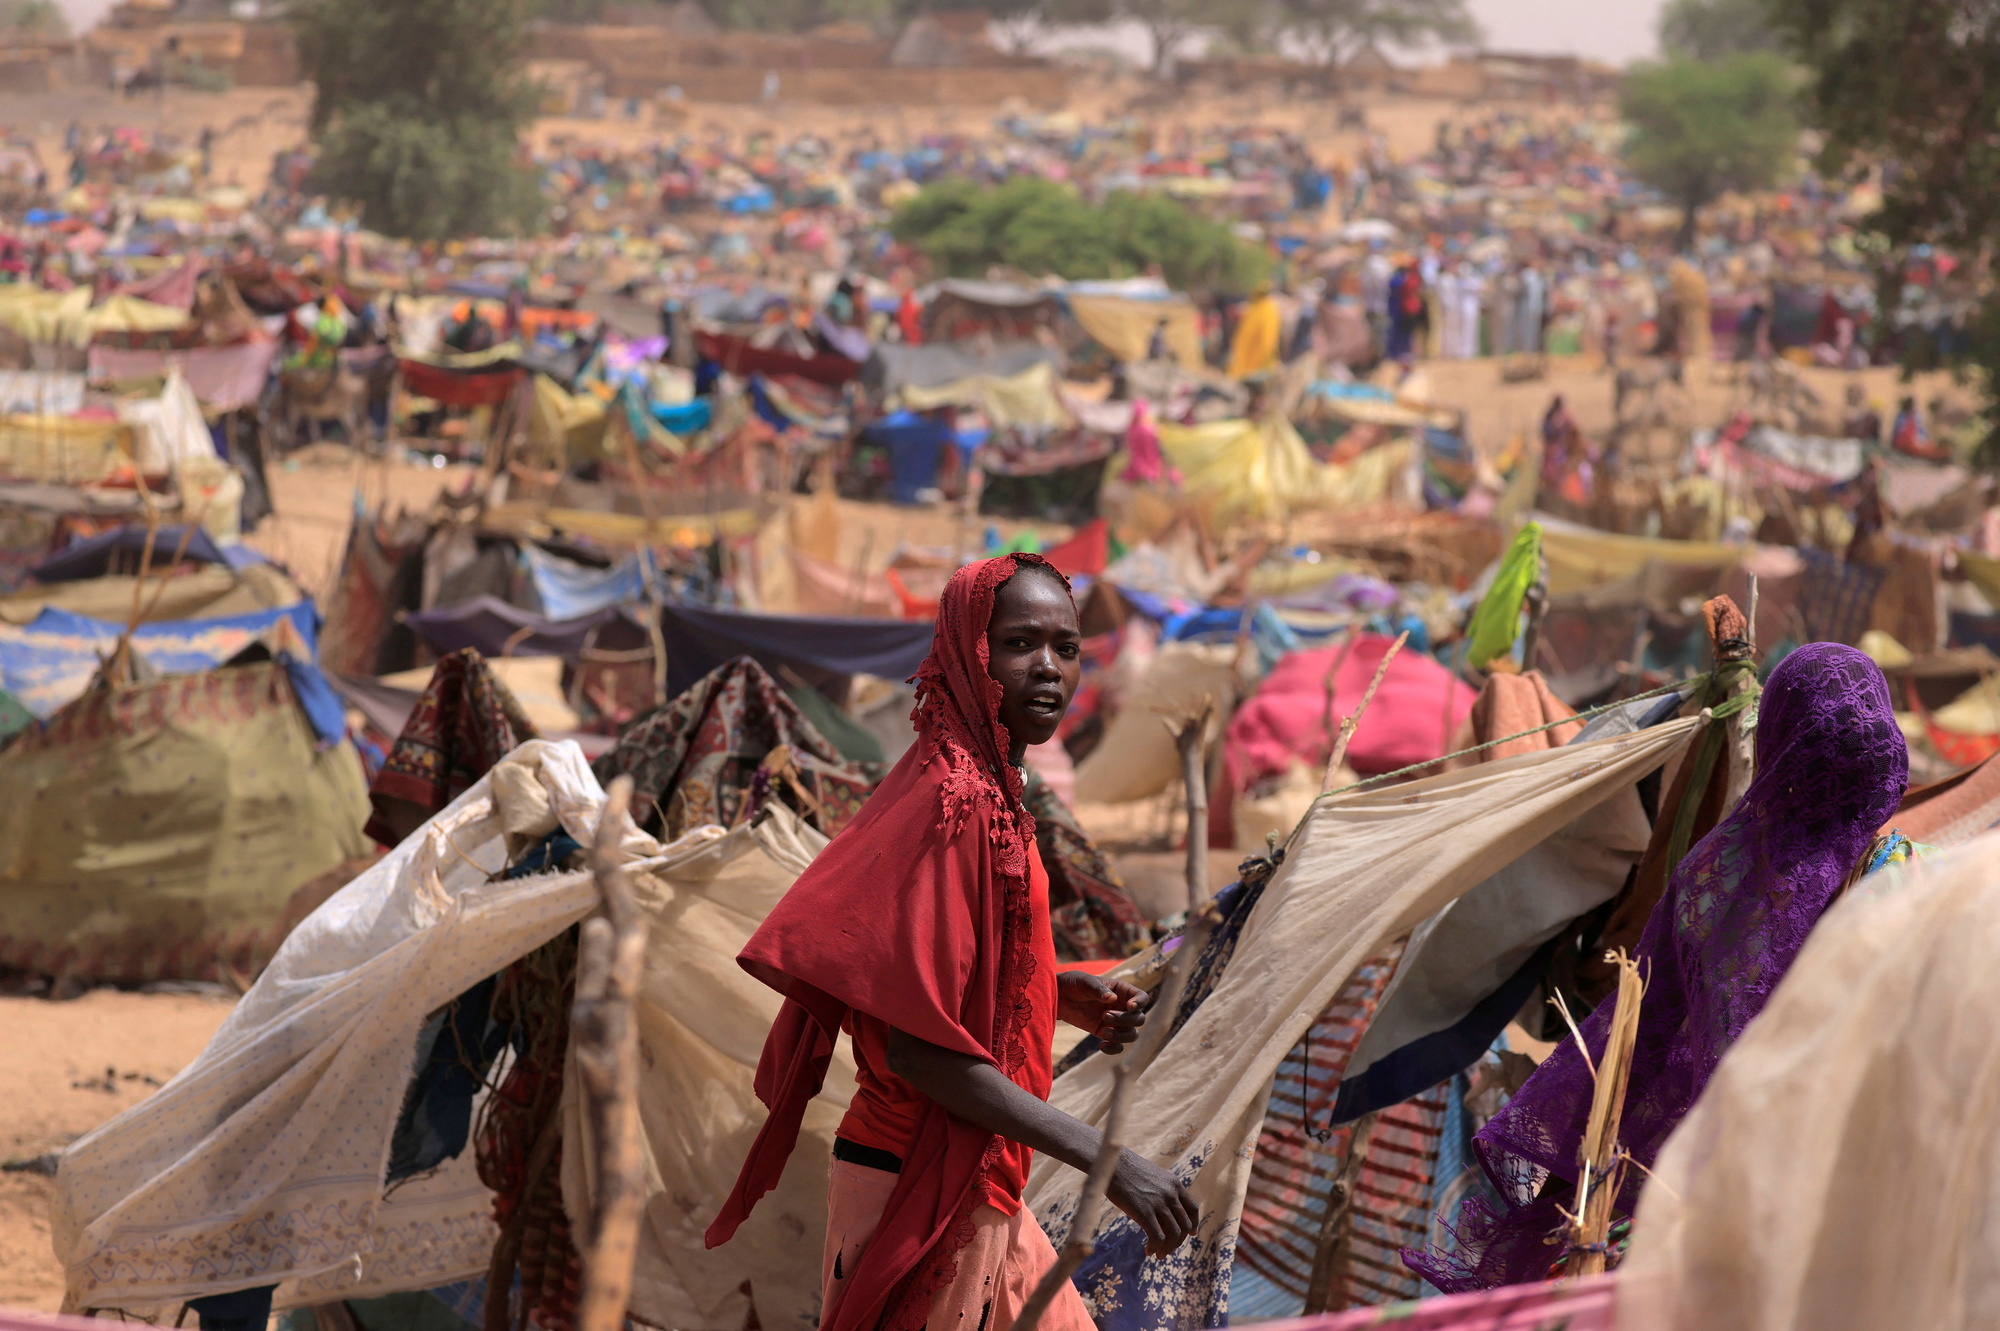 La catastrofe umanitaria del Sudan con 2,5 milioni di sfollati e 25,6 milioni di persone martoriate da fame e guerra